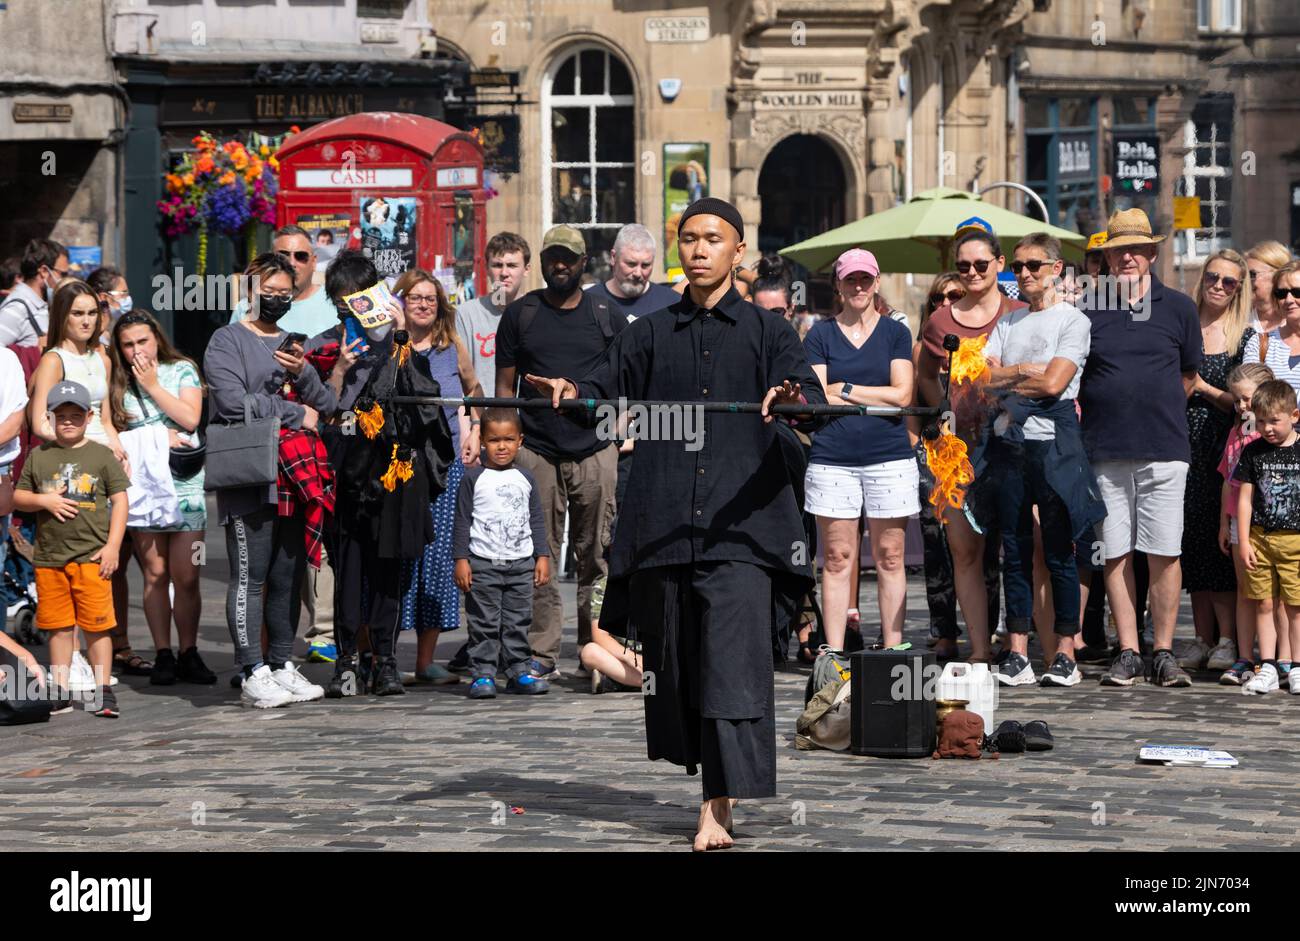 Royal Mile, Edimburgo, Escocia, Reino Unido, 9th de agosto de 2022. Festival de Edimburgo Fringe Street PERFORMER: Un hombre actúa para la multitud al sol jugando con fuego. Crédito: Sally Anderson/Alamy Live News Foto de stock